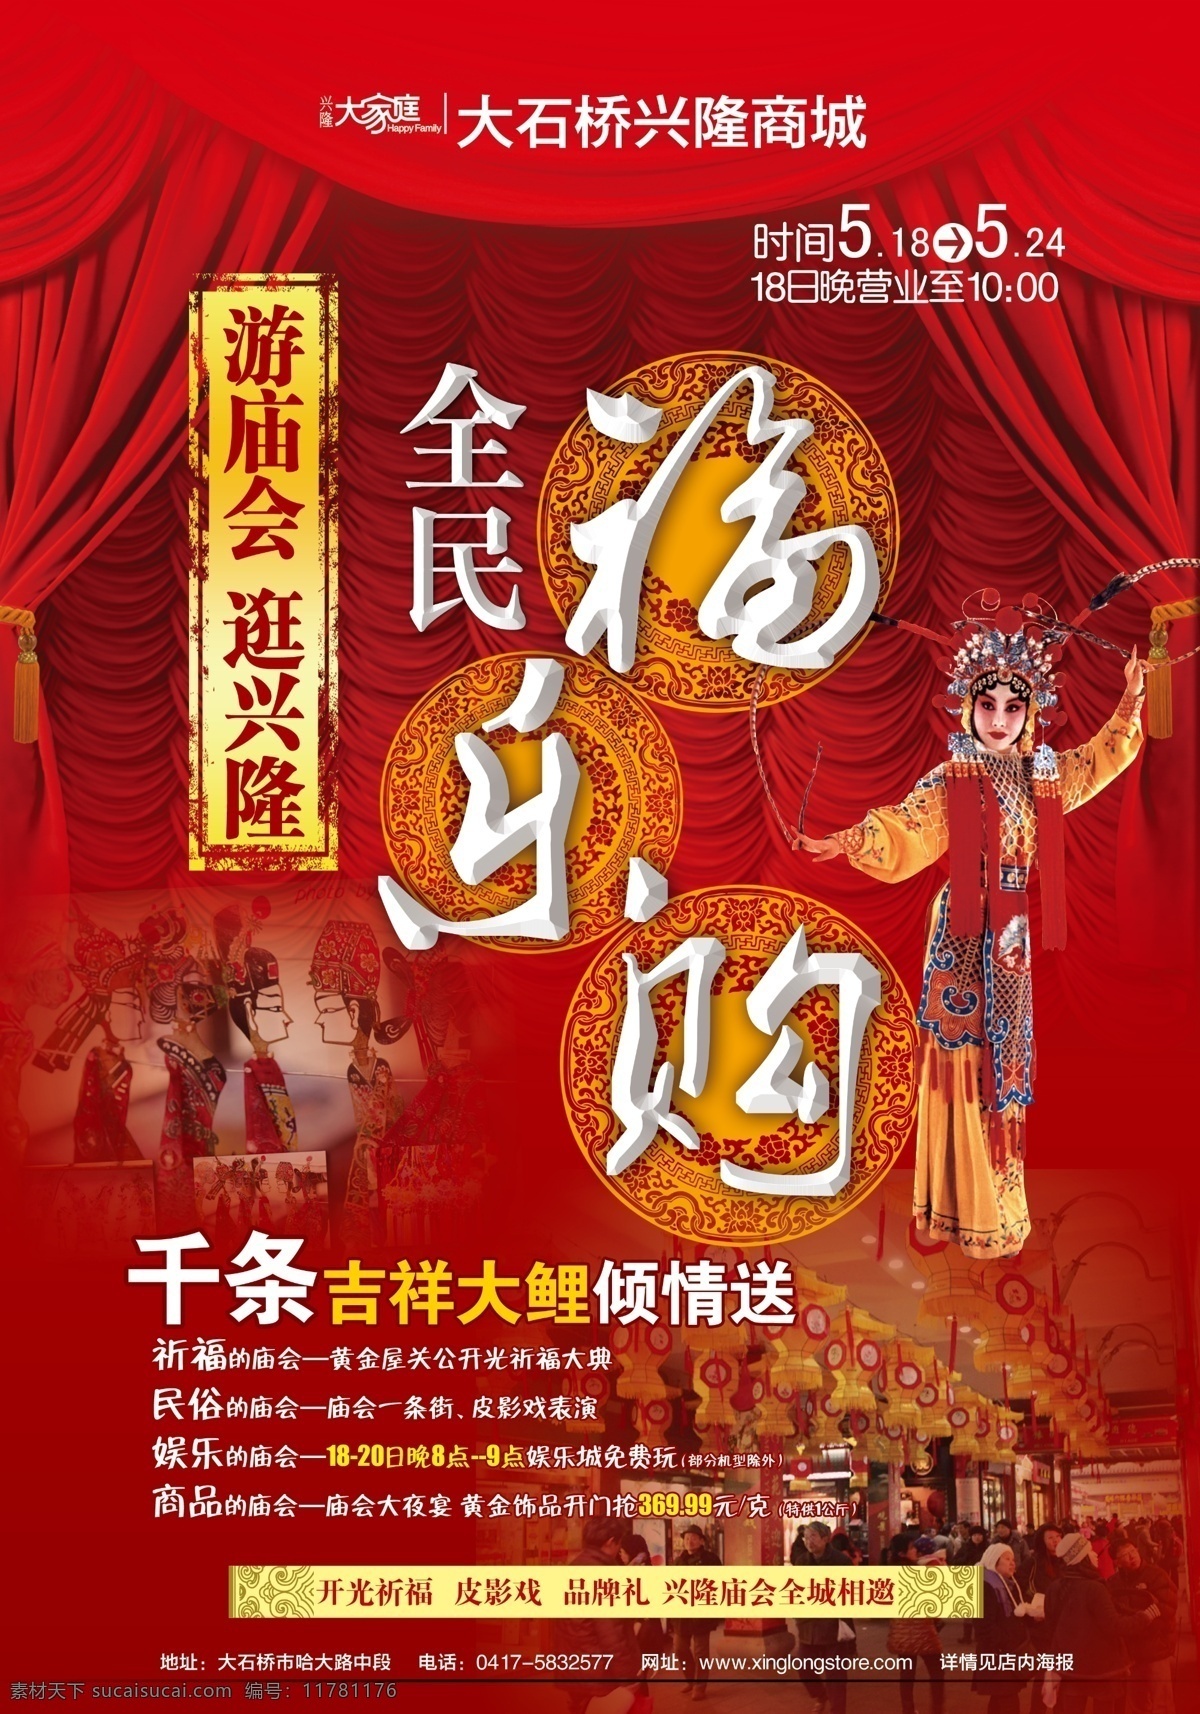 喜庆 庙会 节日 特惠 红色 戏曲 幕布 广告设计模板 源文件